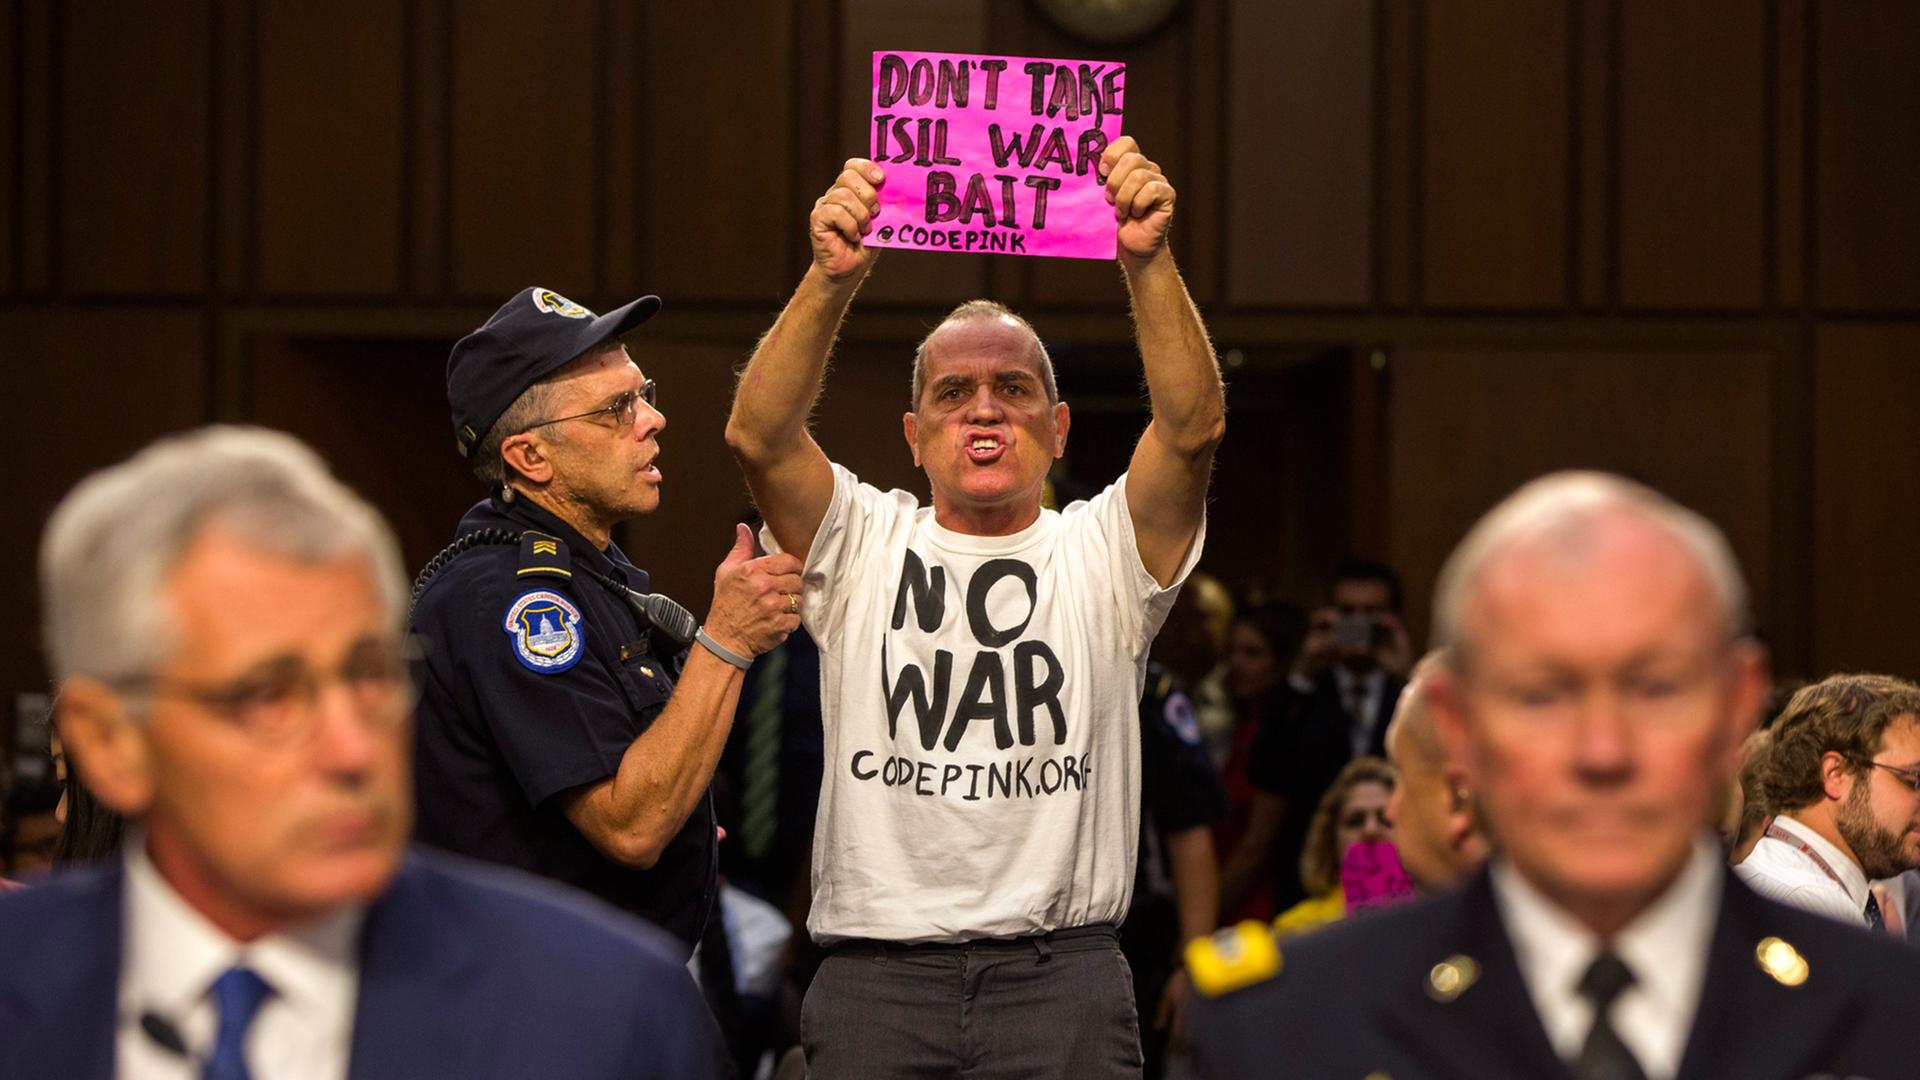 Chuck Hagel und Martin Dempsey sitzen an einem Tisch, während hinter ihnen der Aktivist Tighe Berry aufsteht. Dieser trägt ein T-Shirt mit der Aufschrift "No War" und ein pinkfarbenes Schild mit dem Text "Don´t take Isil war bait"